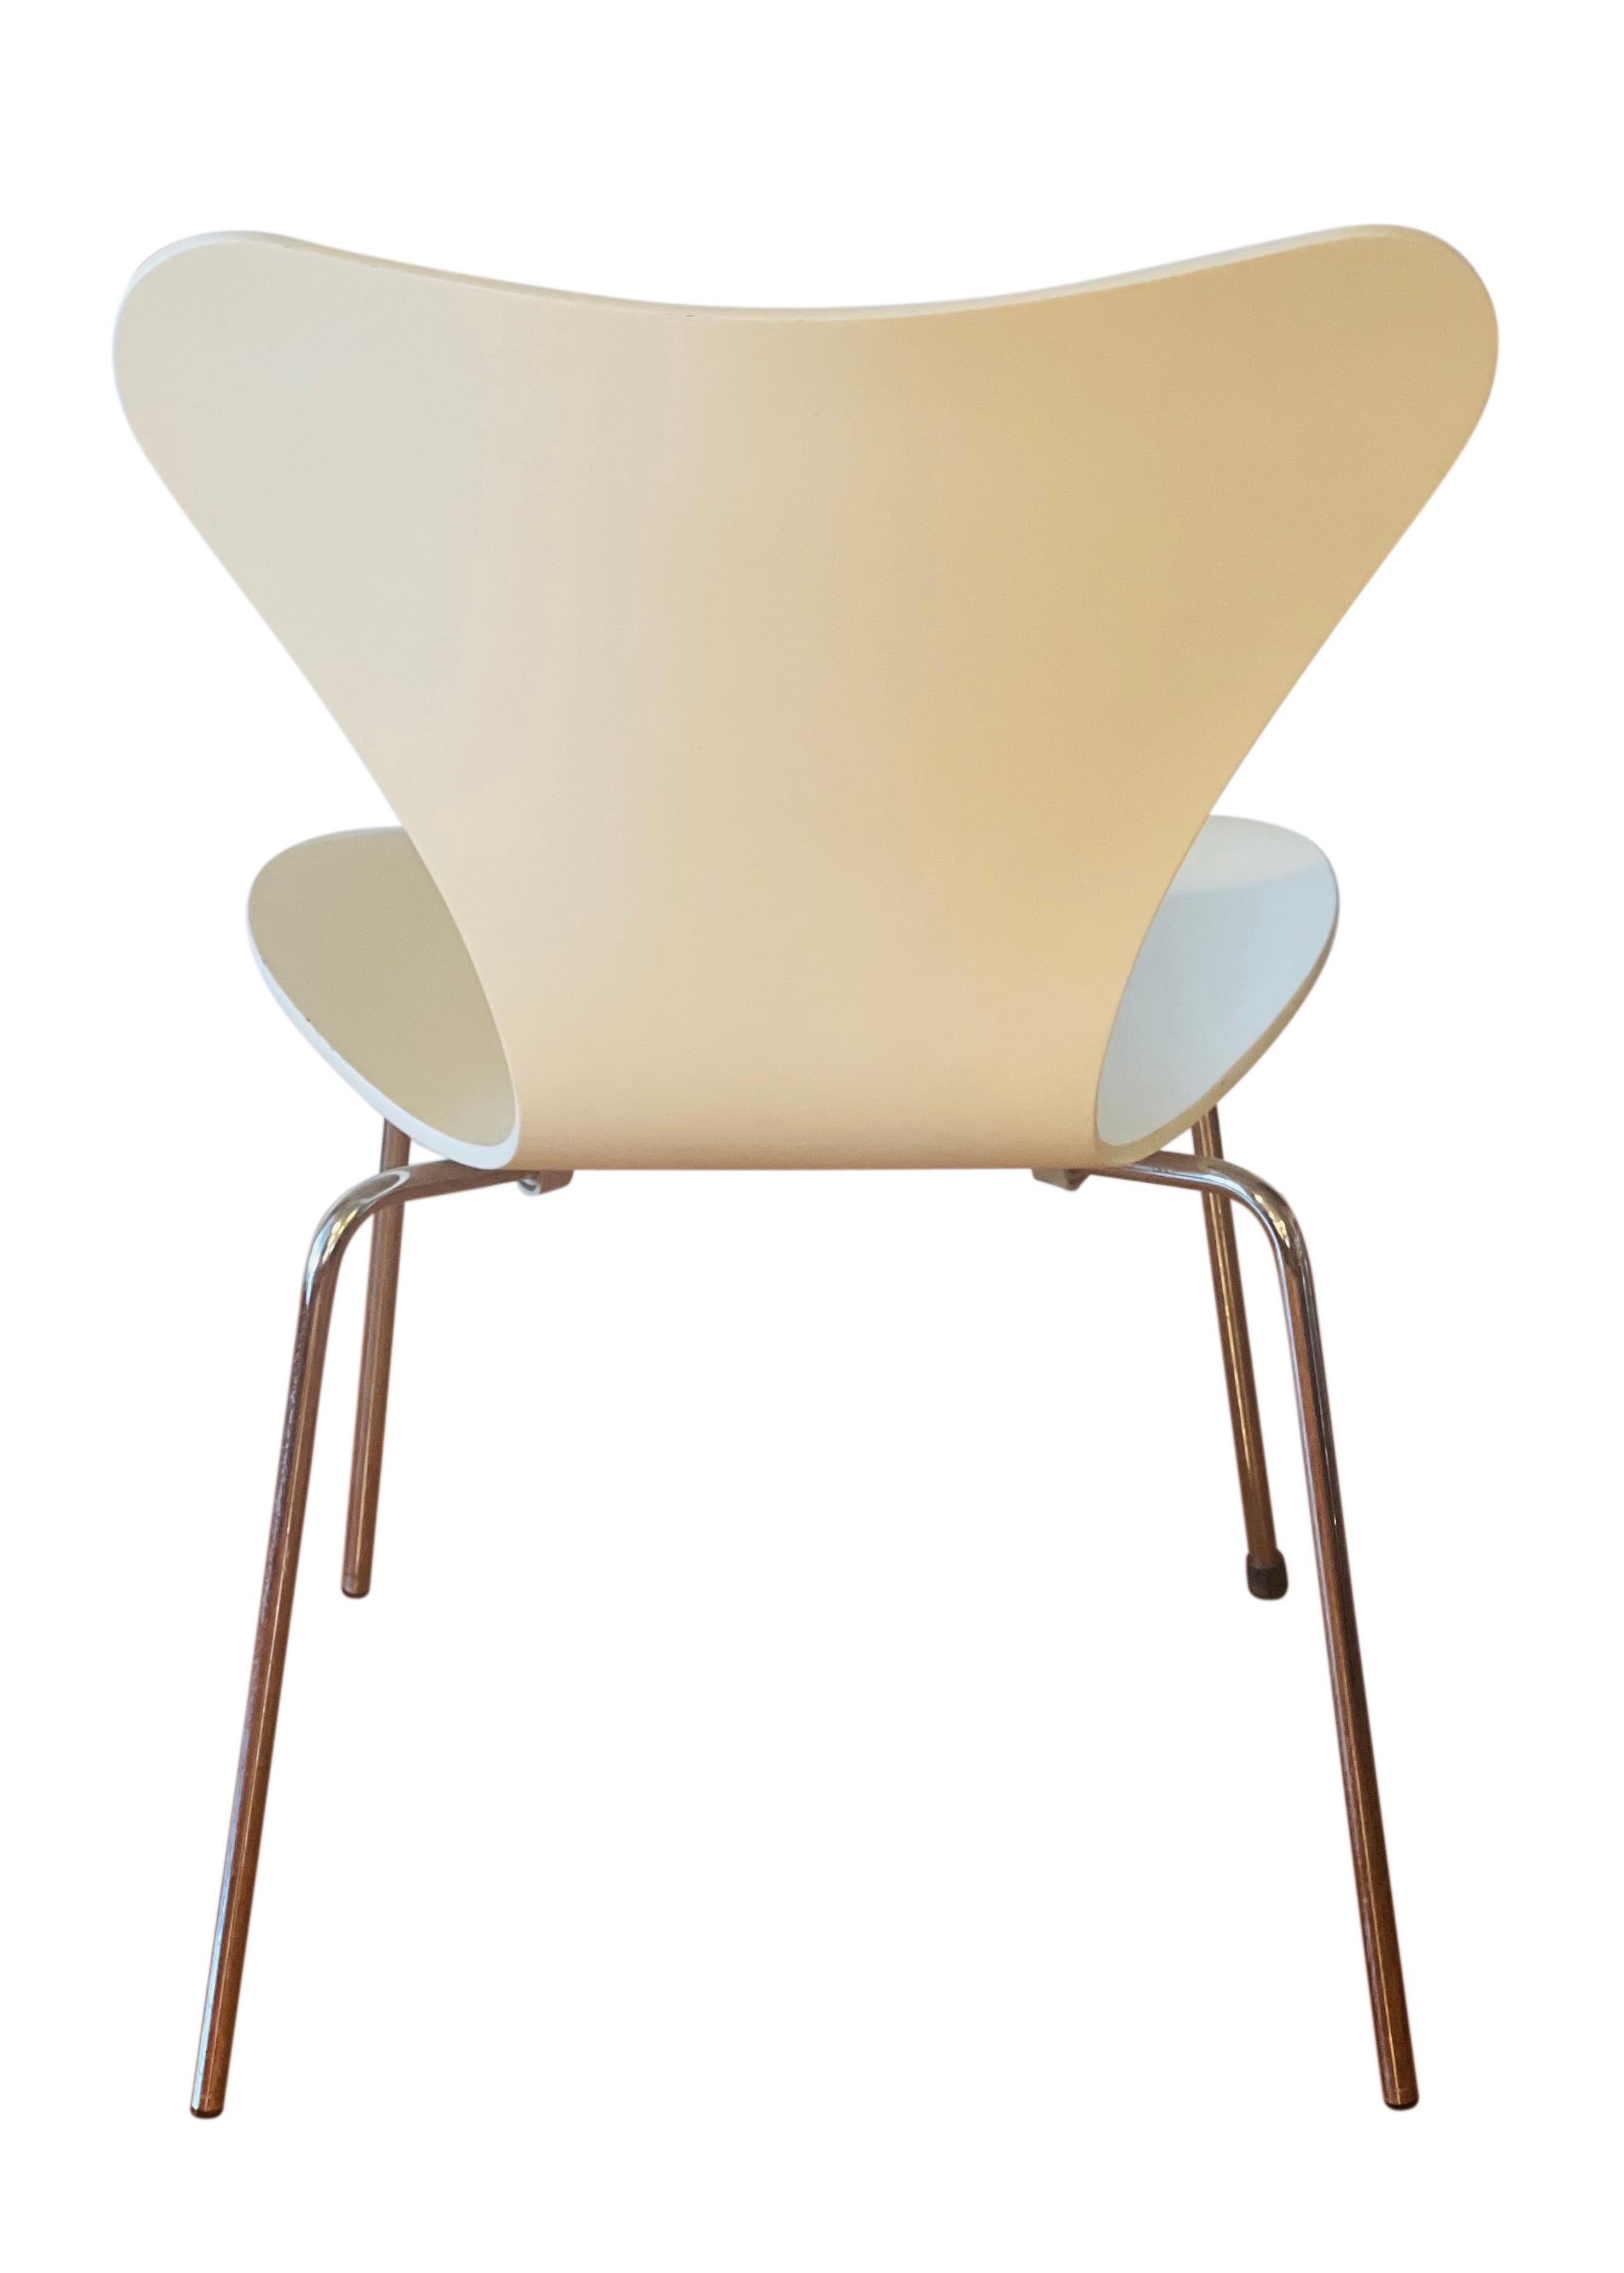 Molded Arne Jacobsen for Fritz Hansen Series 7 Chairs in White, Set of 4